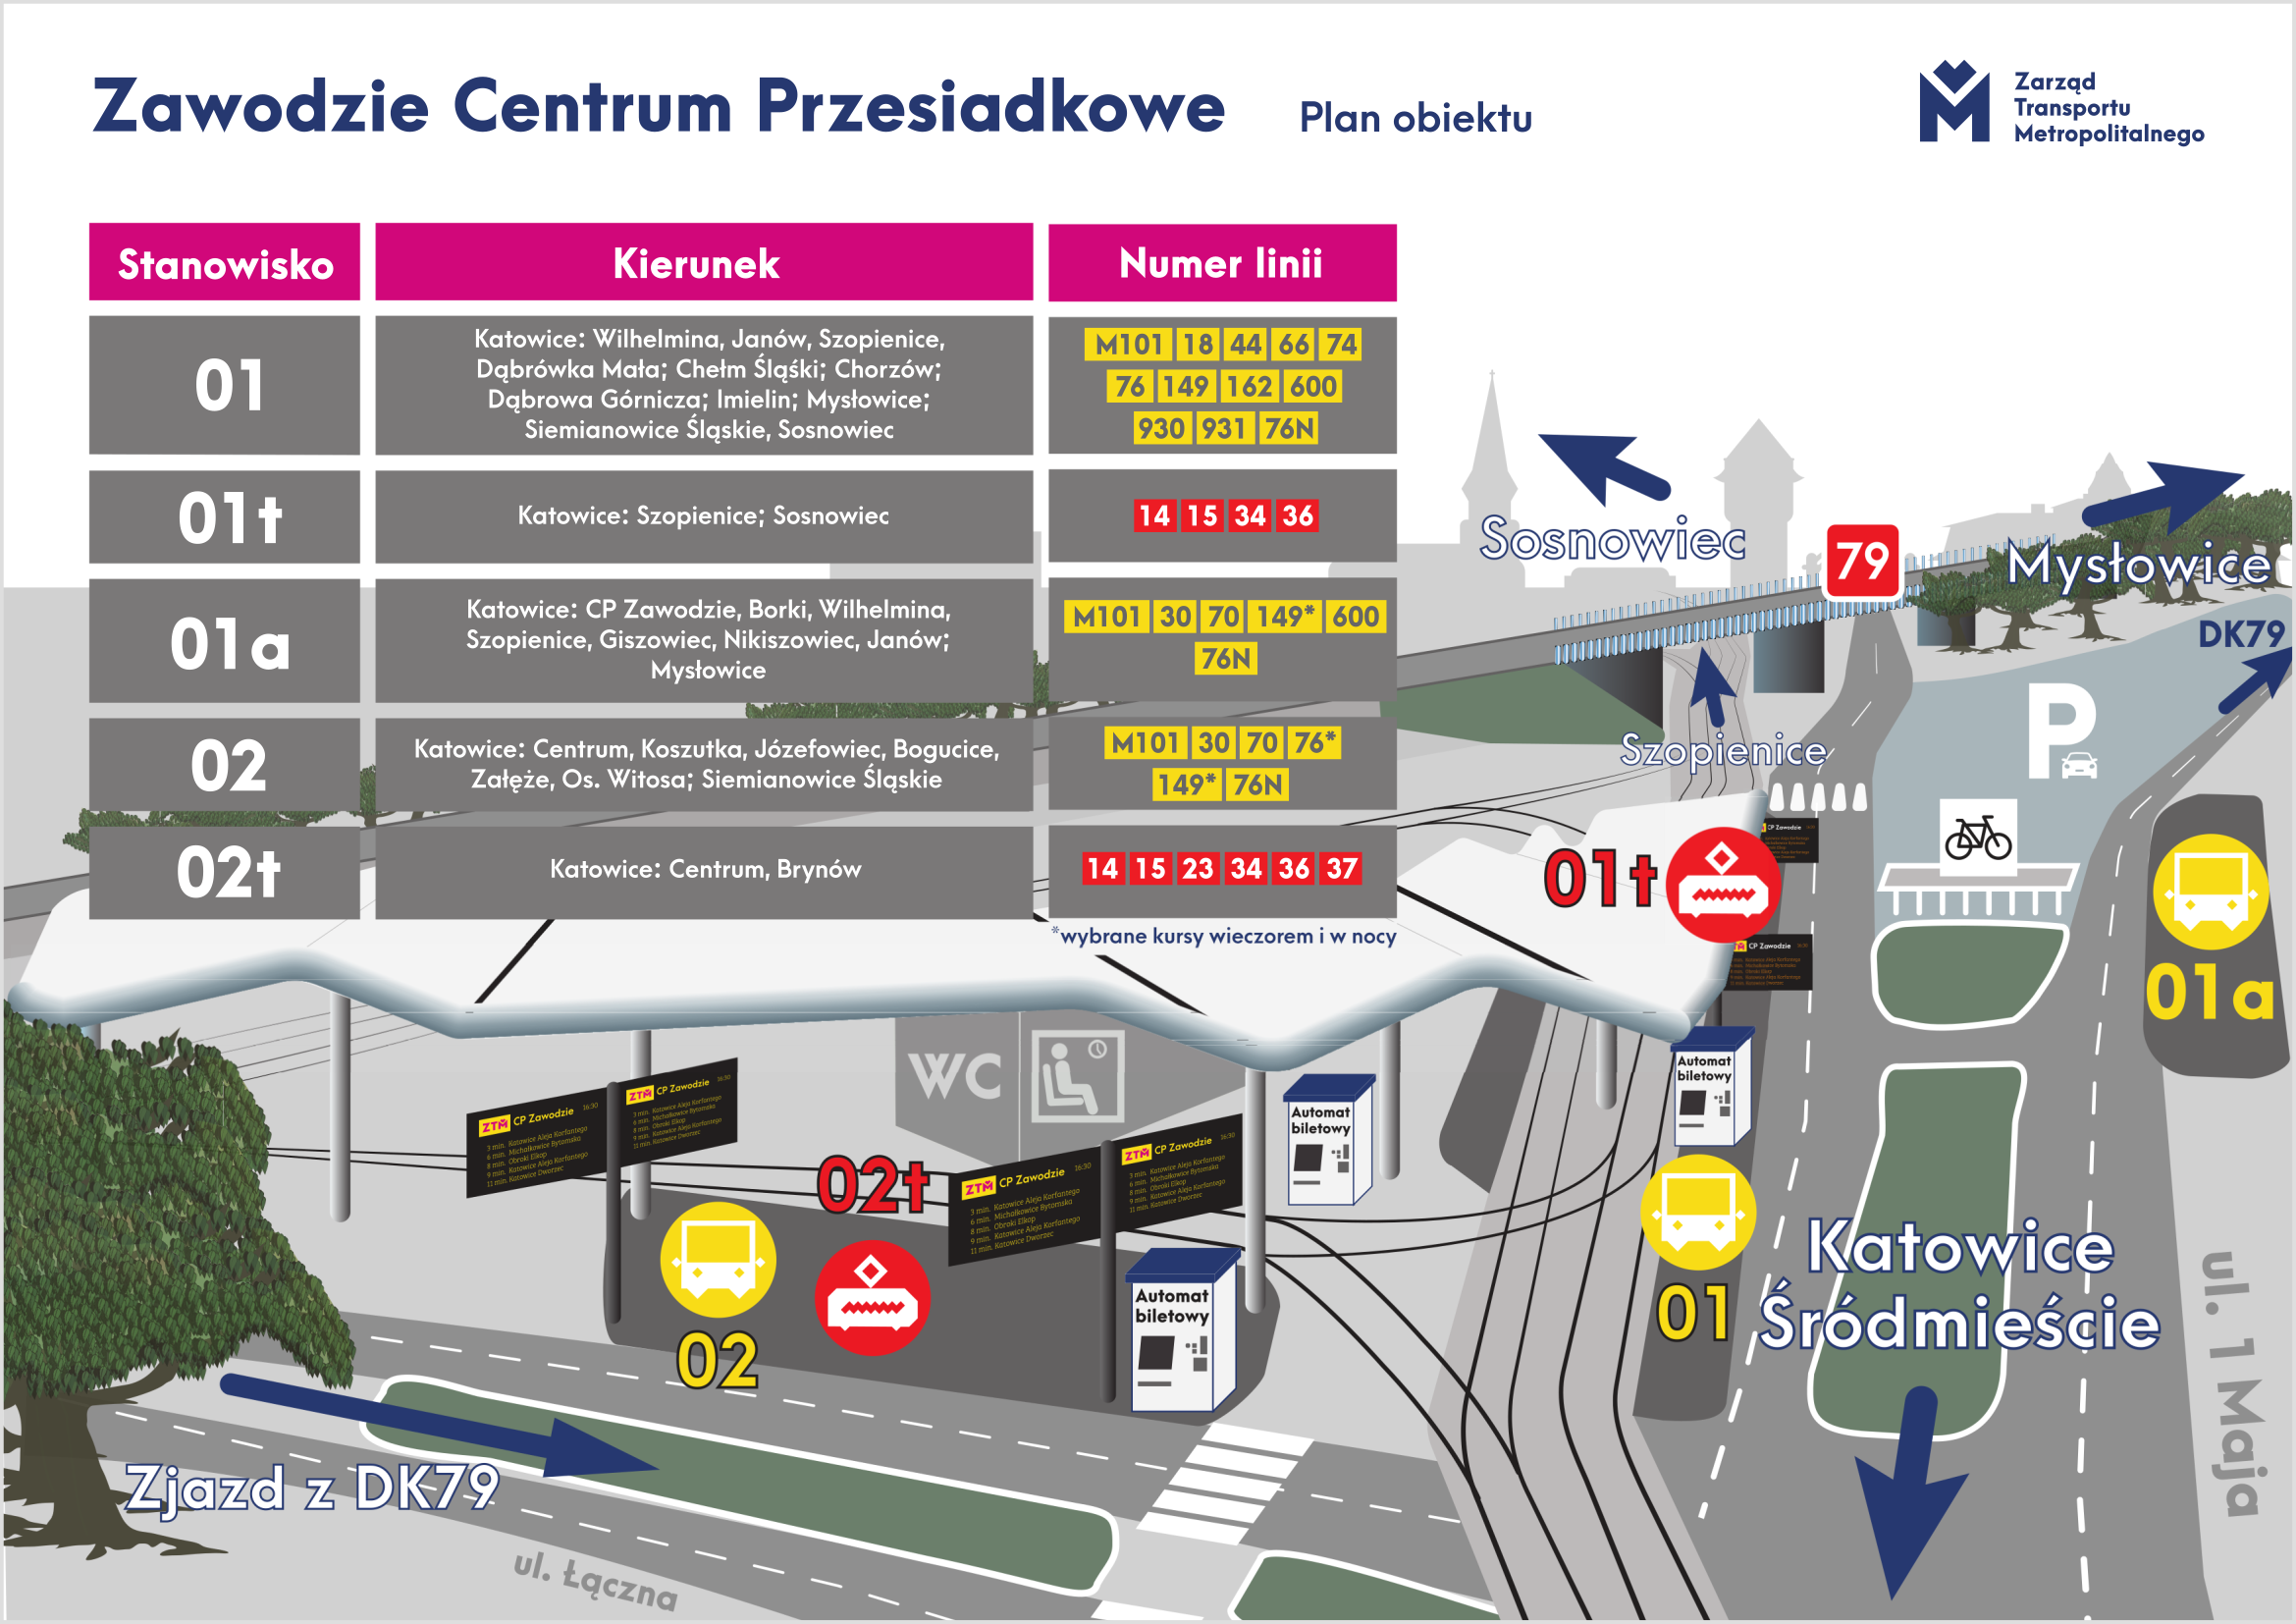 Katowice - Centrum Przesiadkowe Zawodzie